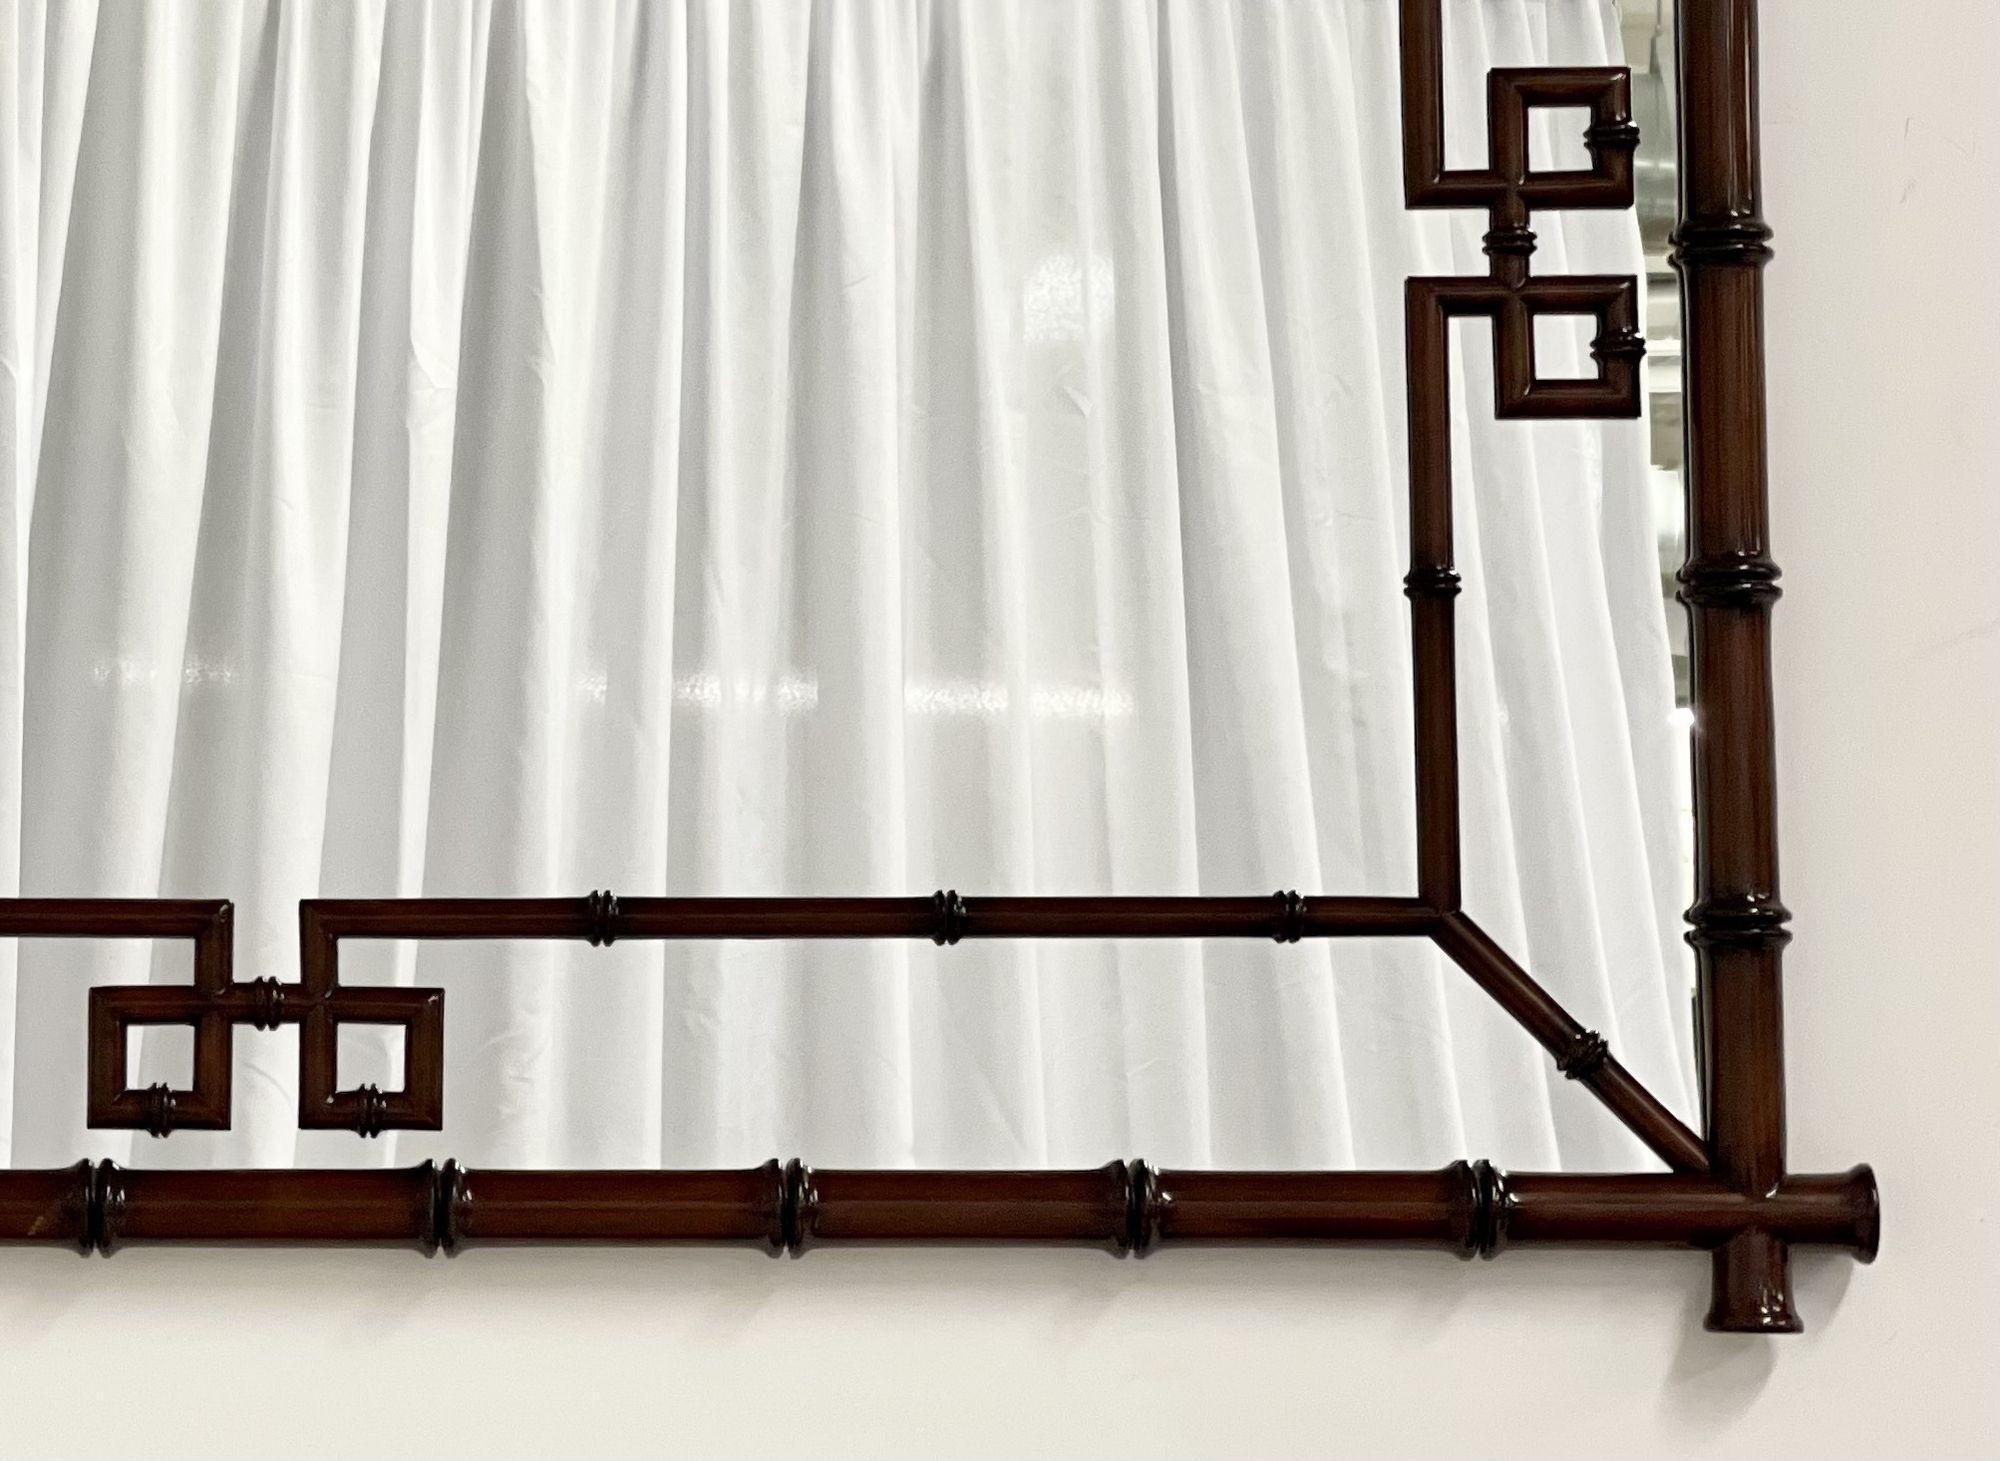 Faux Bamboo Metallwand, Konsolenspiegel, kann in beide Richtungen hängen
 
 Ein eleganter und stilvoller Metallrahmen, der einen Bambus darstellt, umrahmt einen sauberen und klaren Spiegel. Dieser Spiegel kann sowohl senkrecht als auch waagerecht